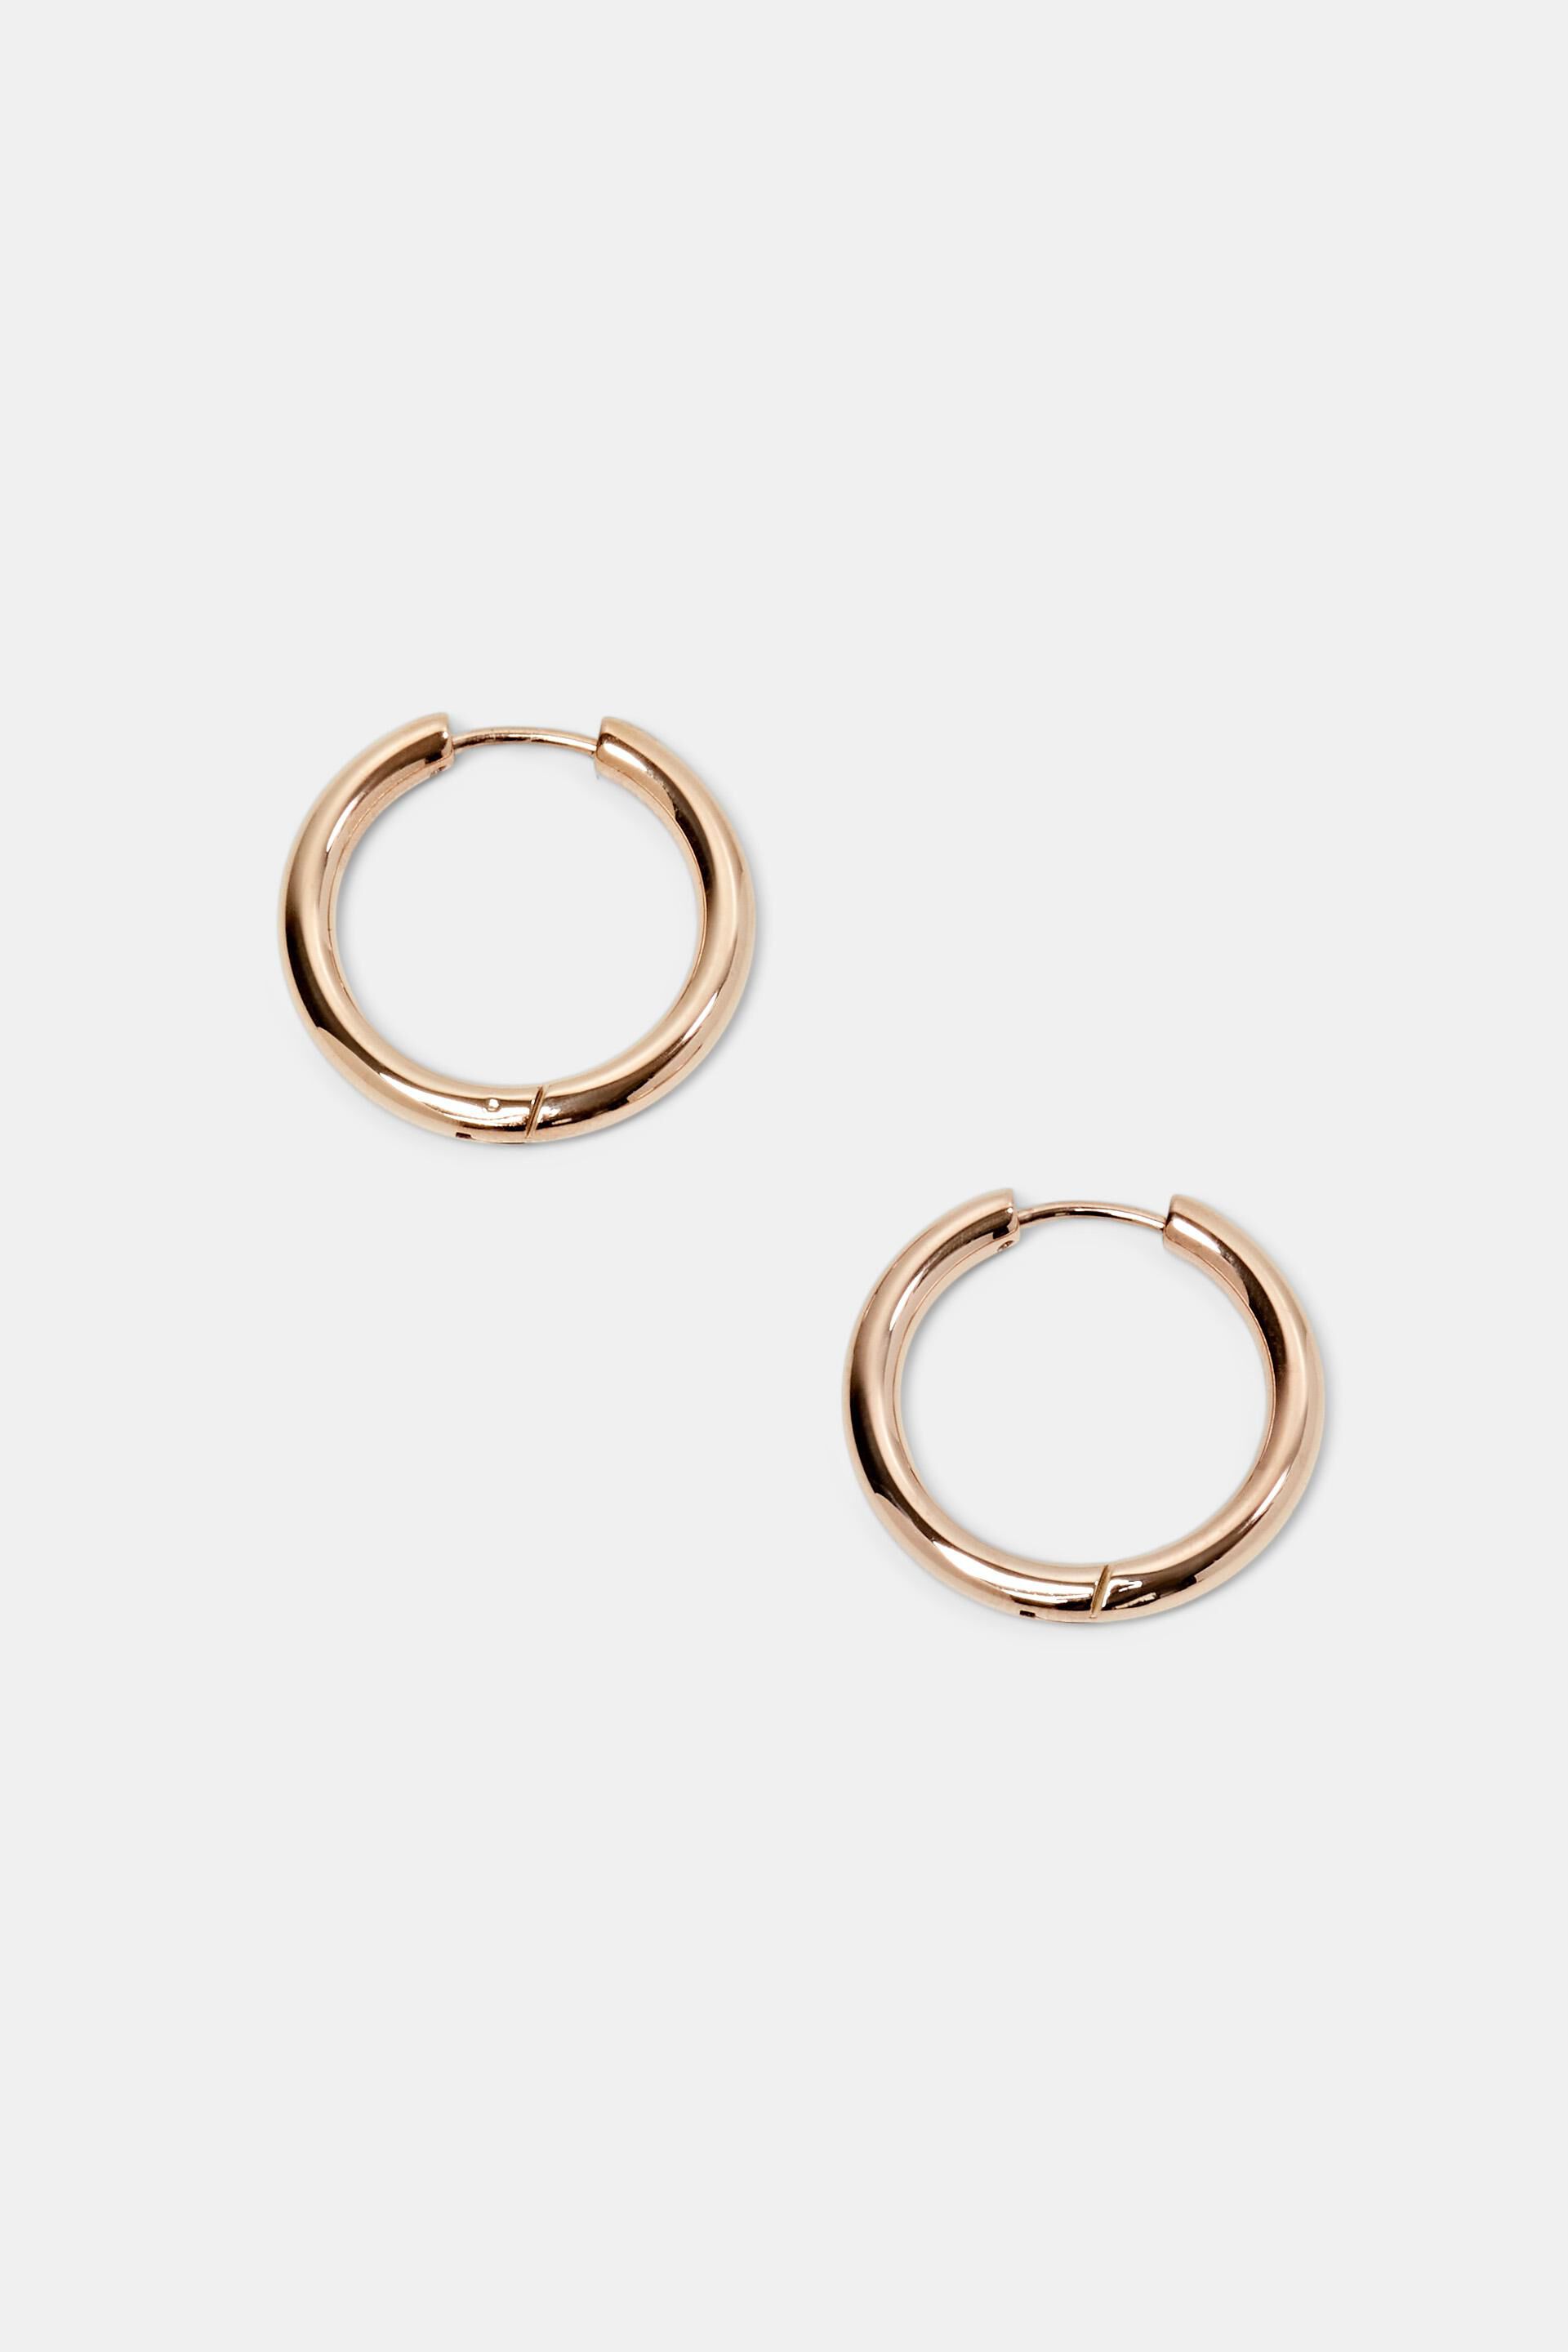 Esprit Online Store Small hoop earrings, stainless steel